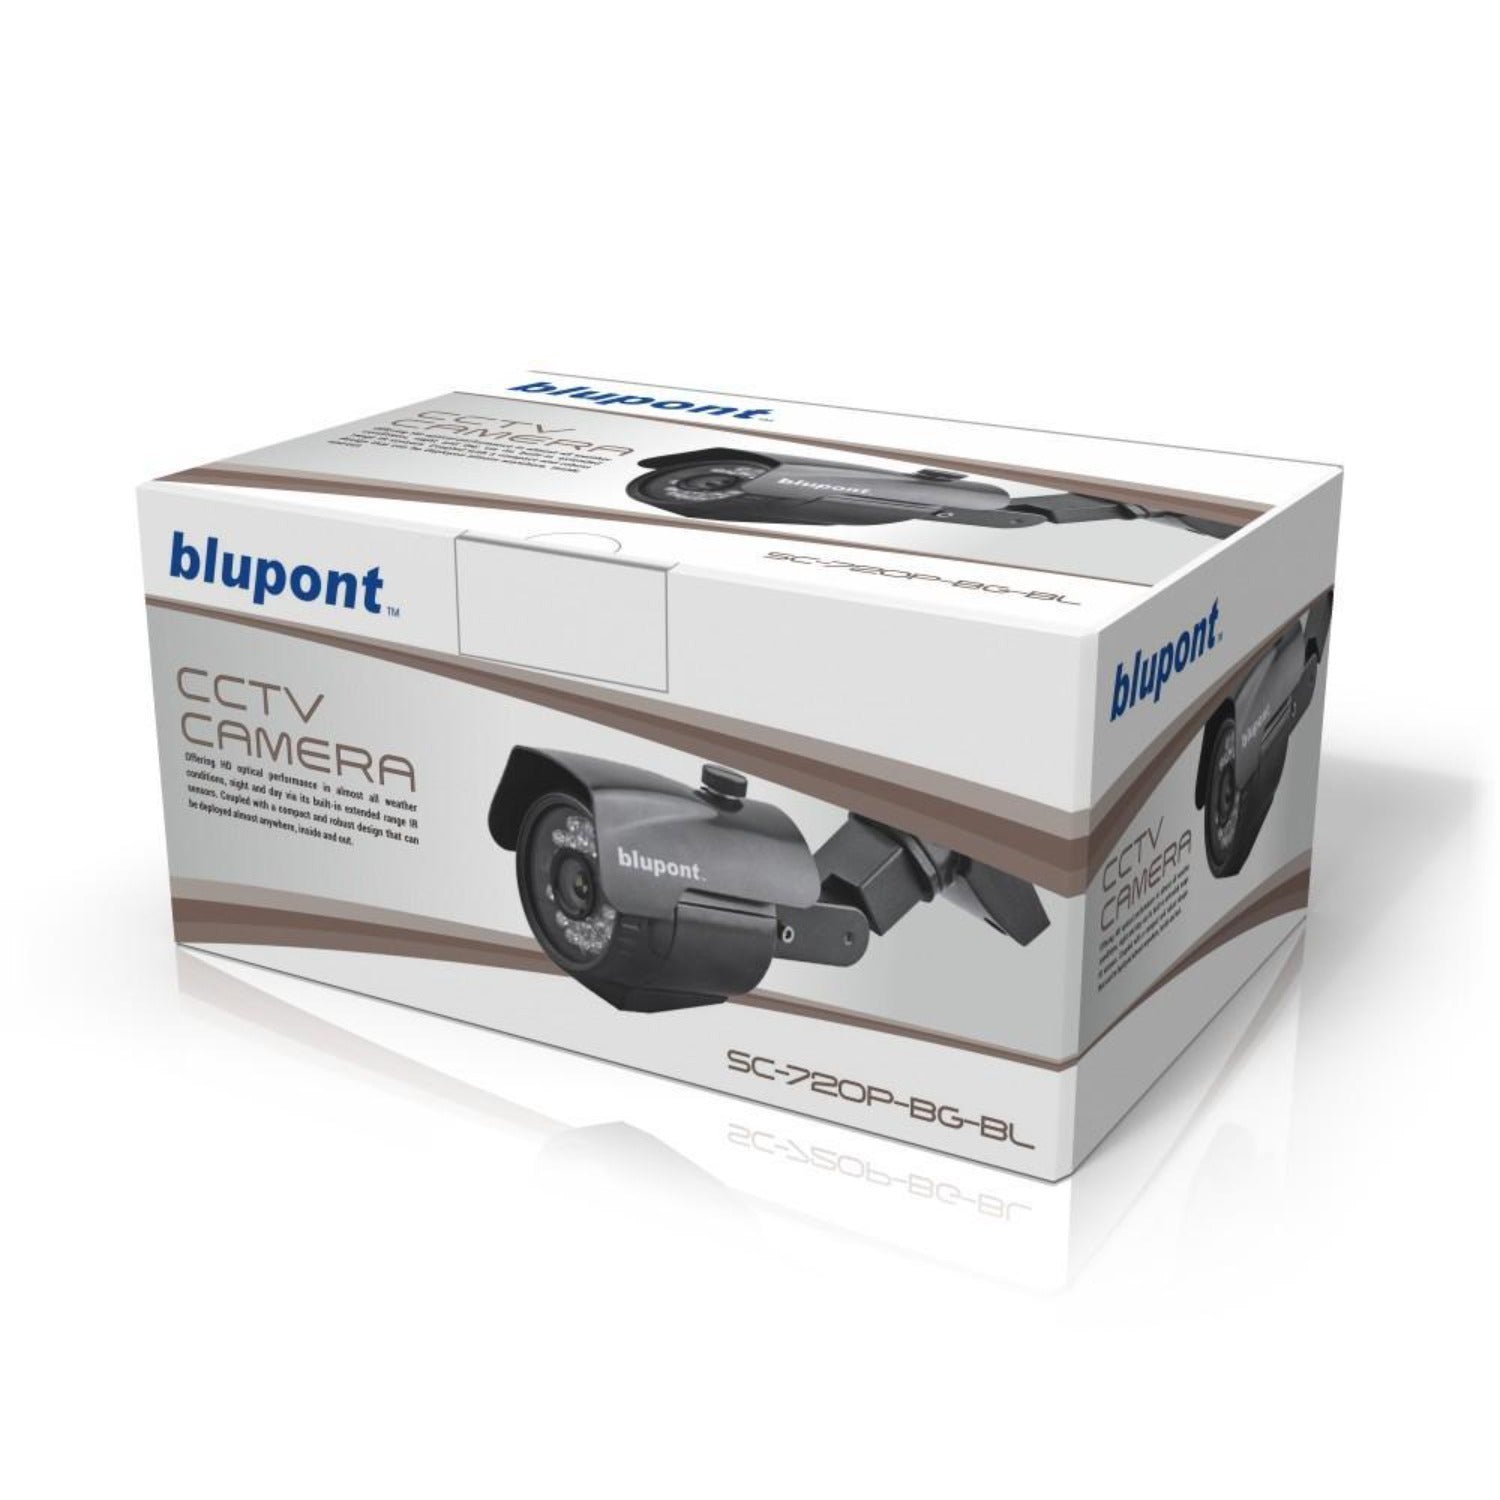 2.0MP 4in1 Grey Bullet CCTV Camera - Netbit UK